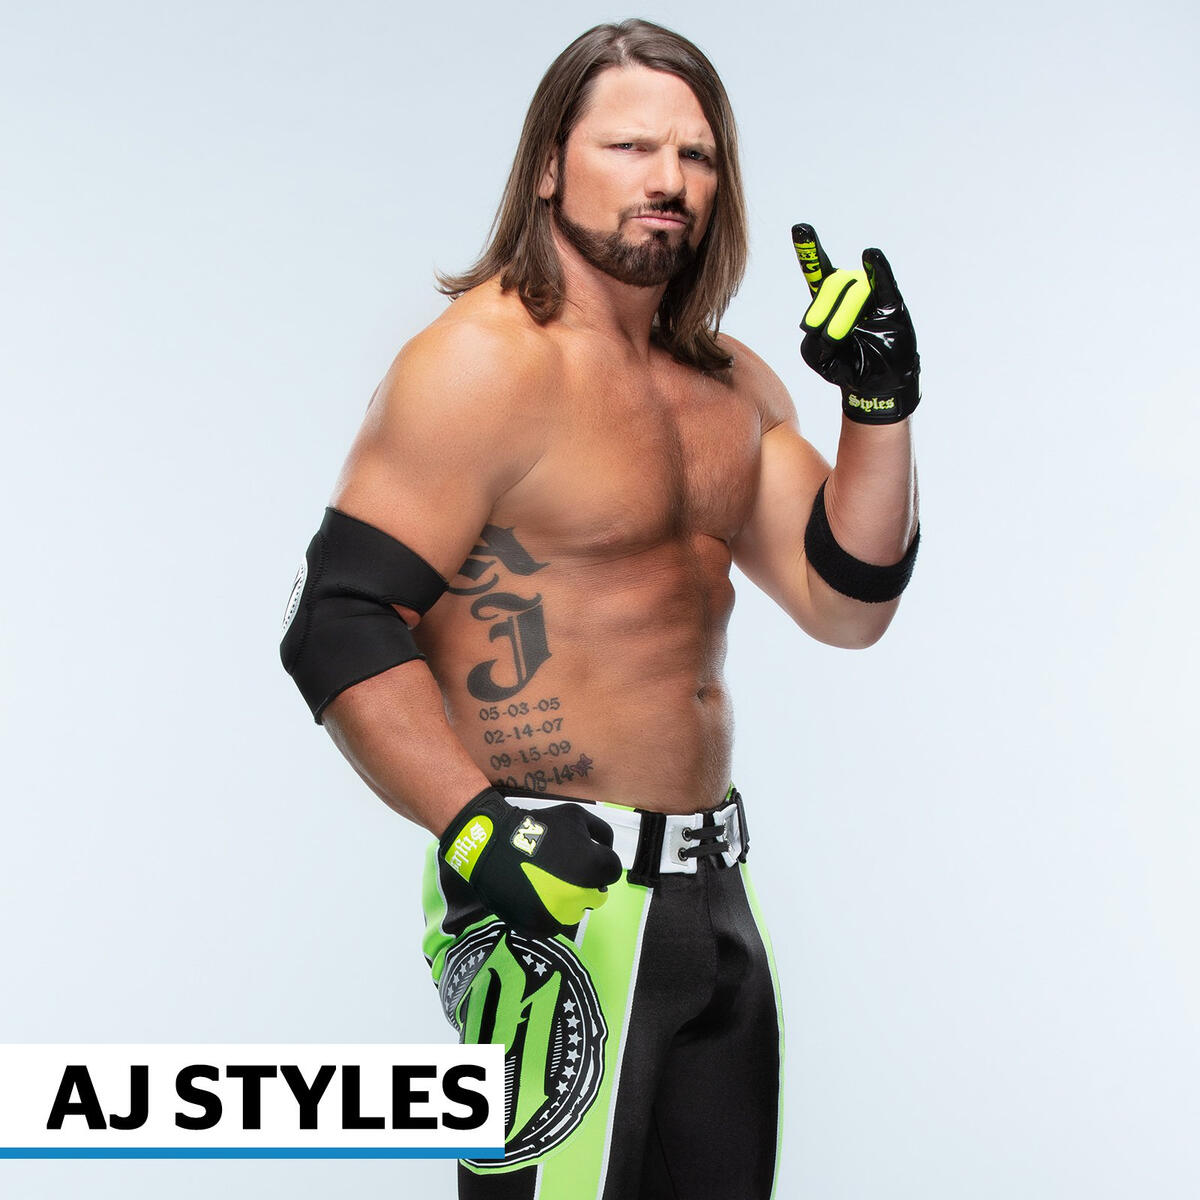 Coolest Superstar ring gear: photos | WWE